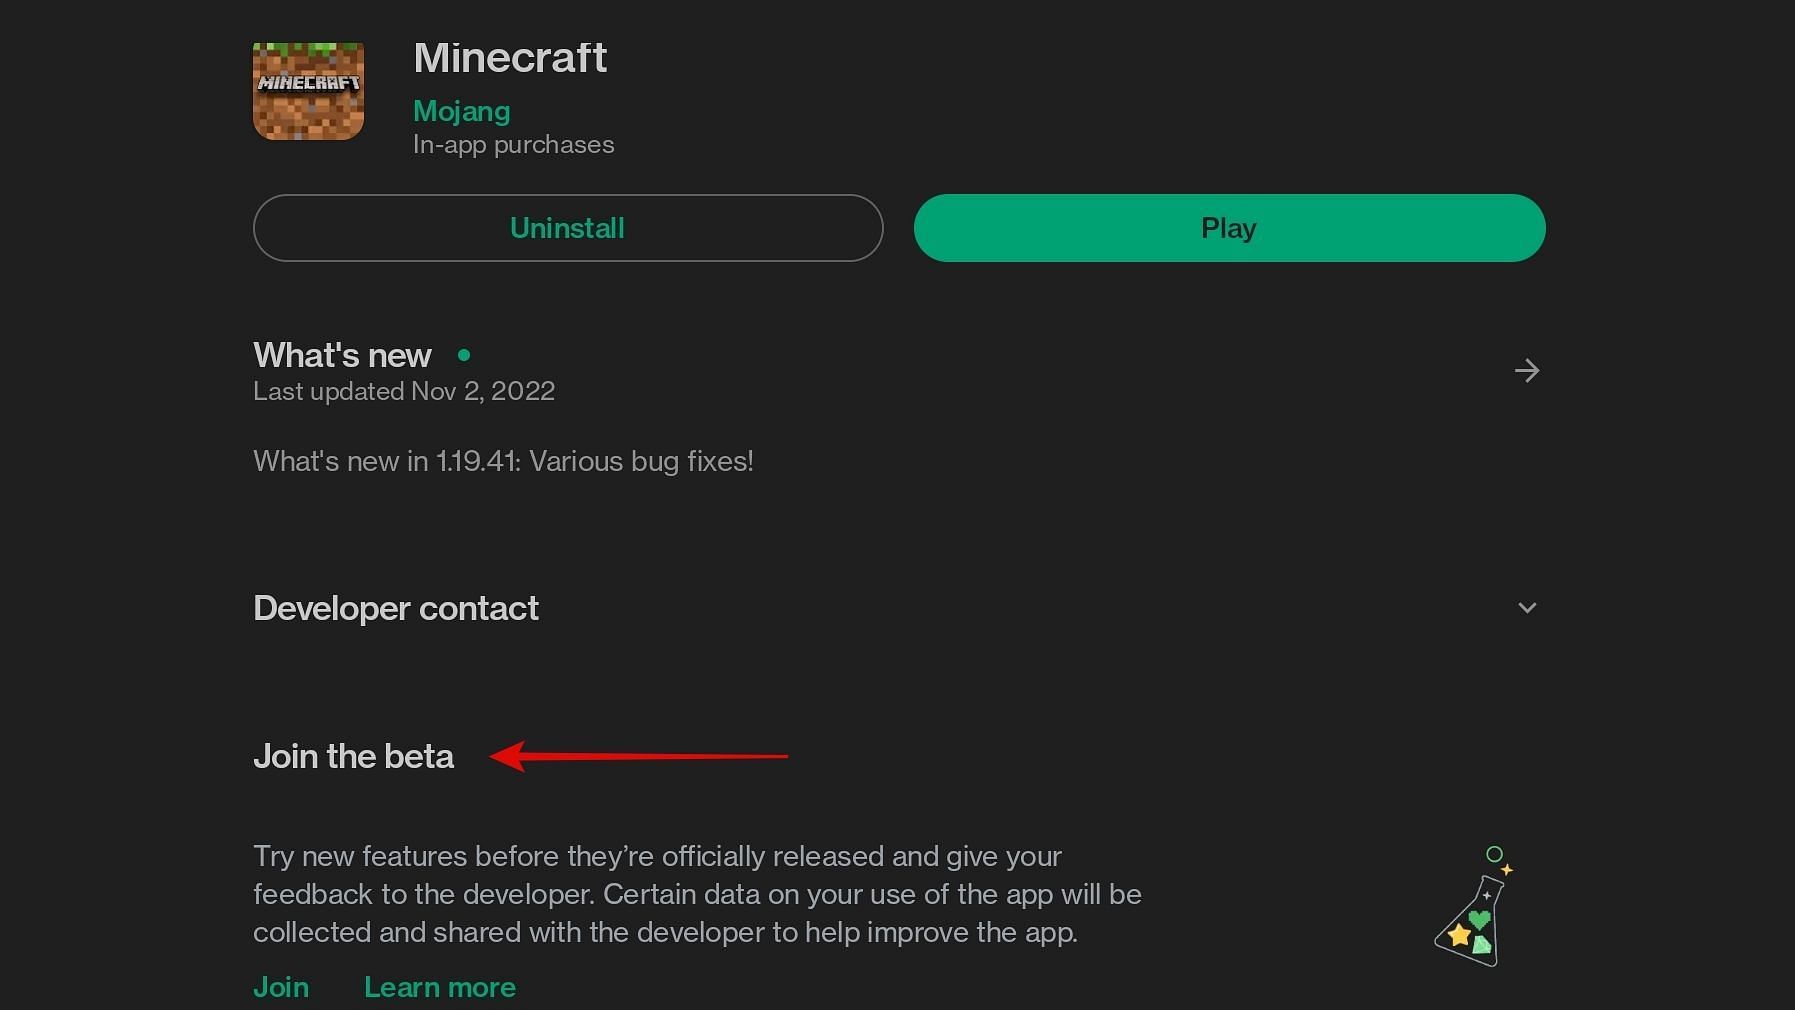 Minecraft Beta & Preview - 1.19.70.21 – Minecraft Feedback